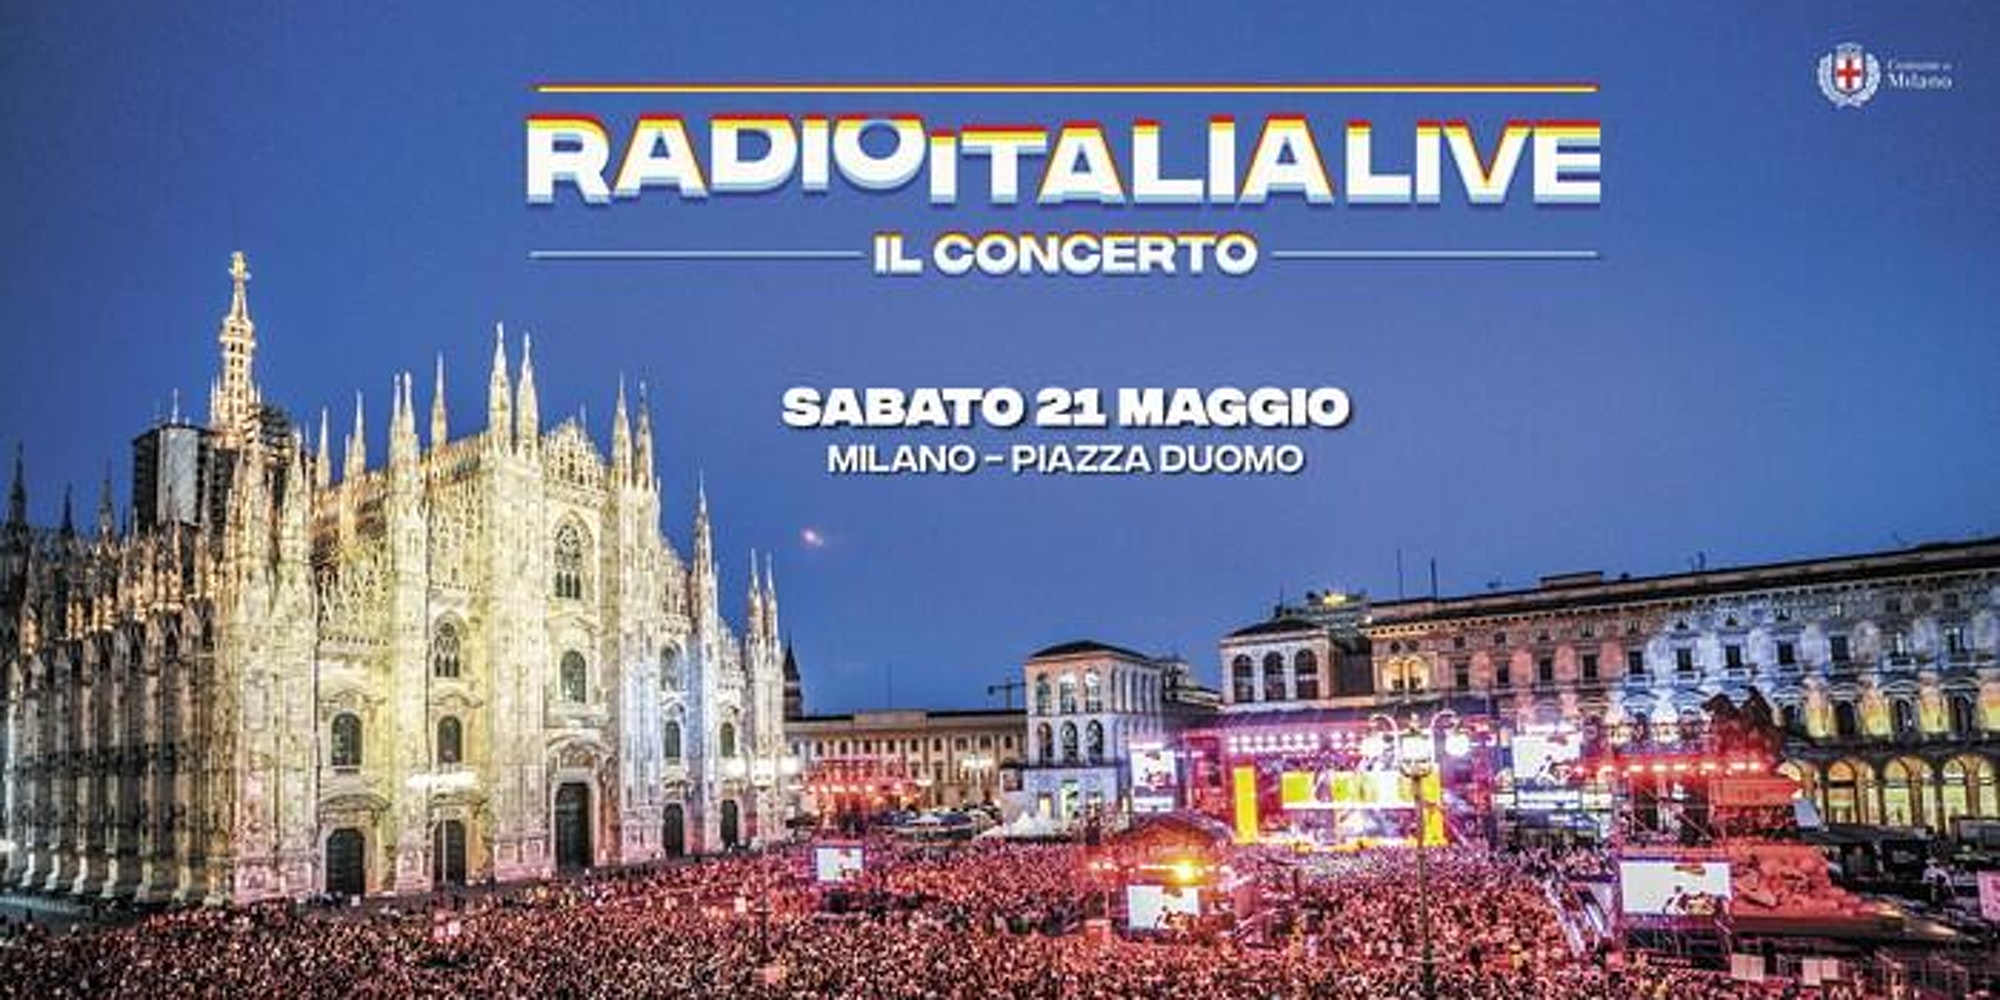 Live Concert Radio Italia in Piazza Duomo a Milano